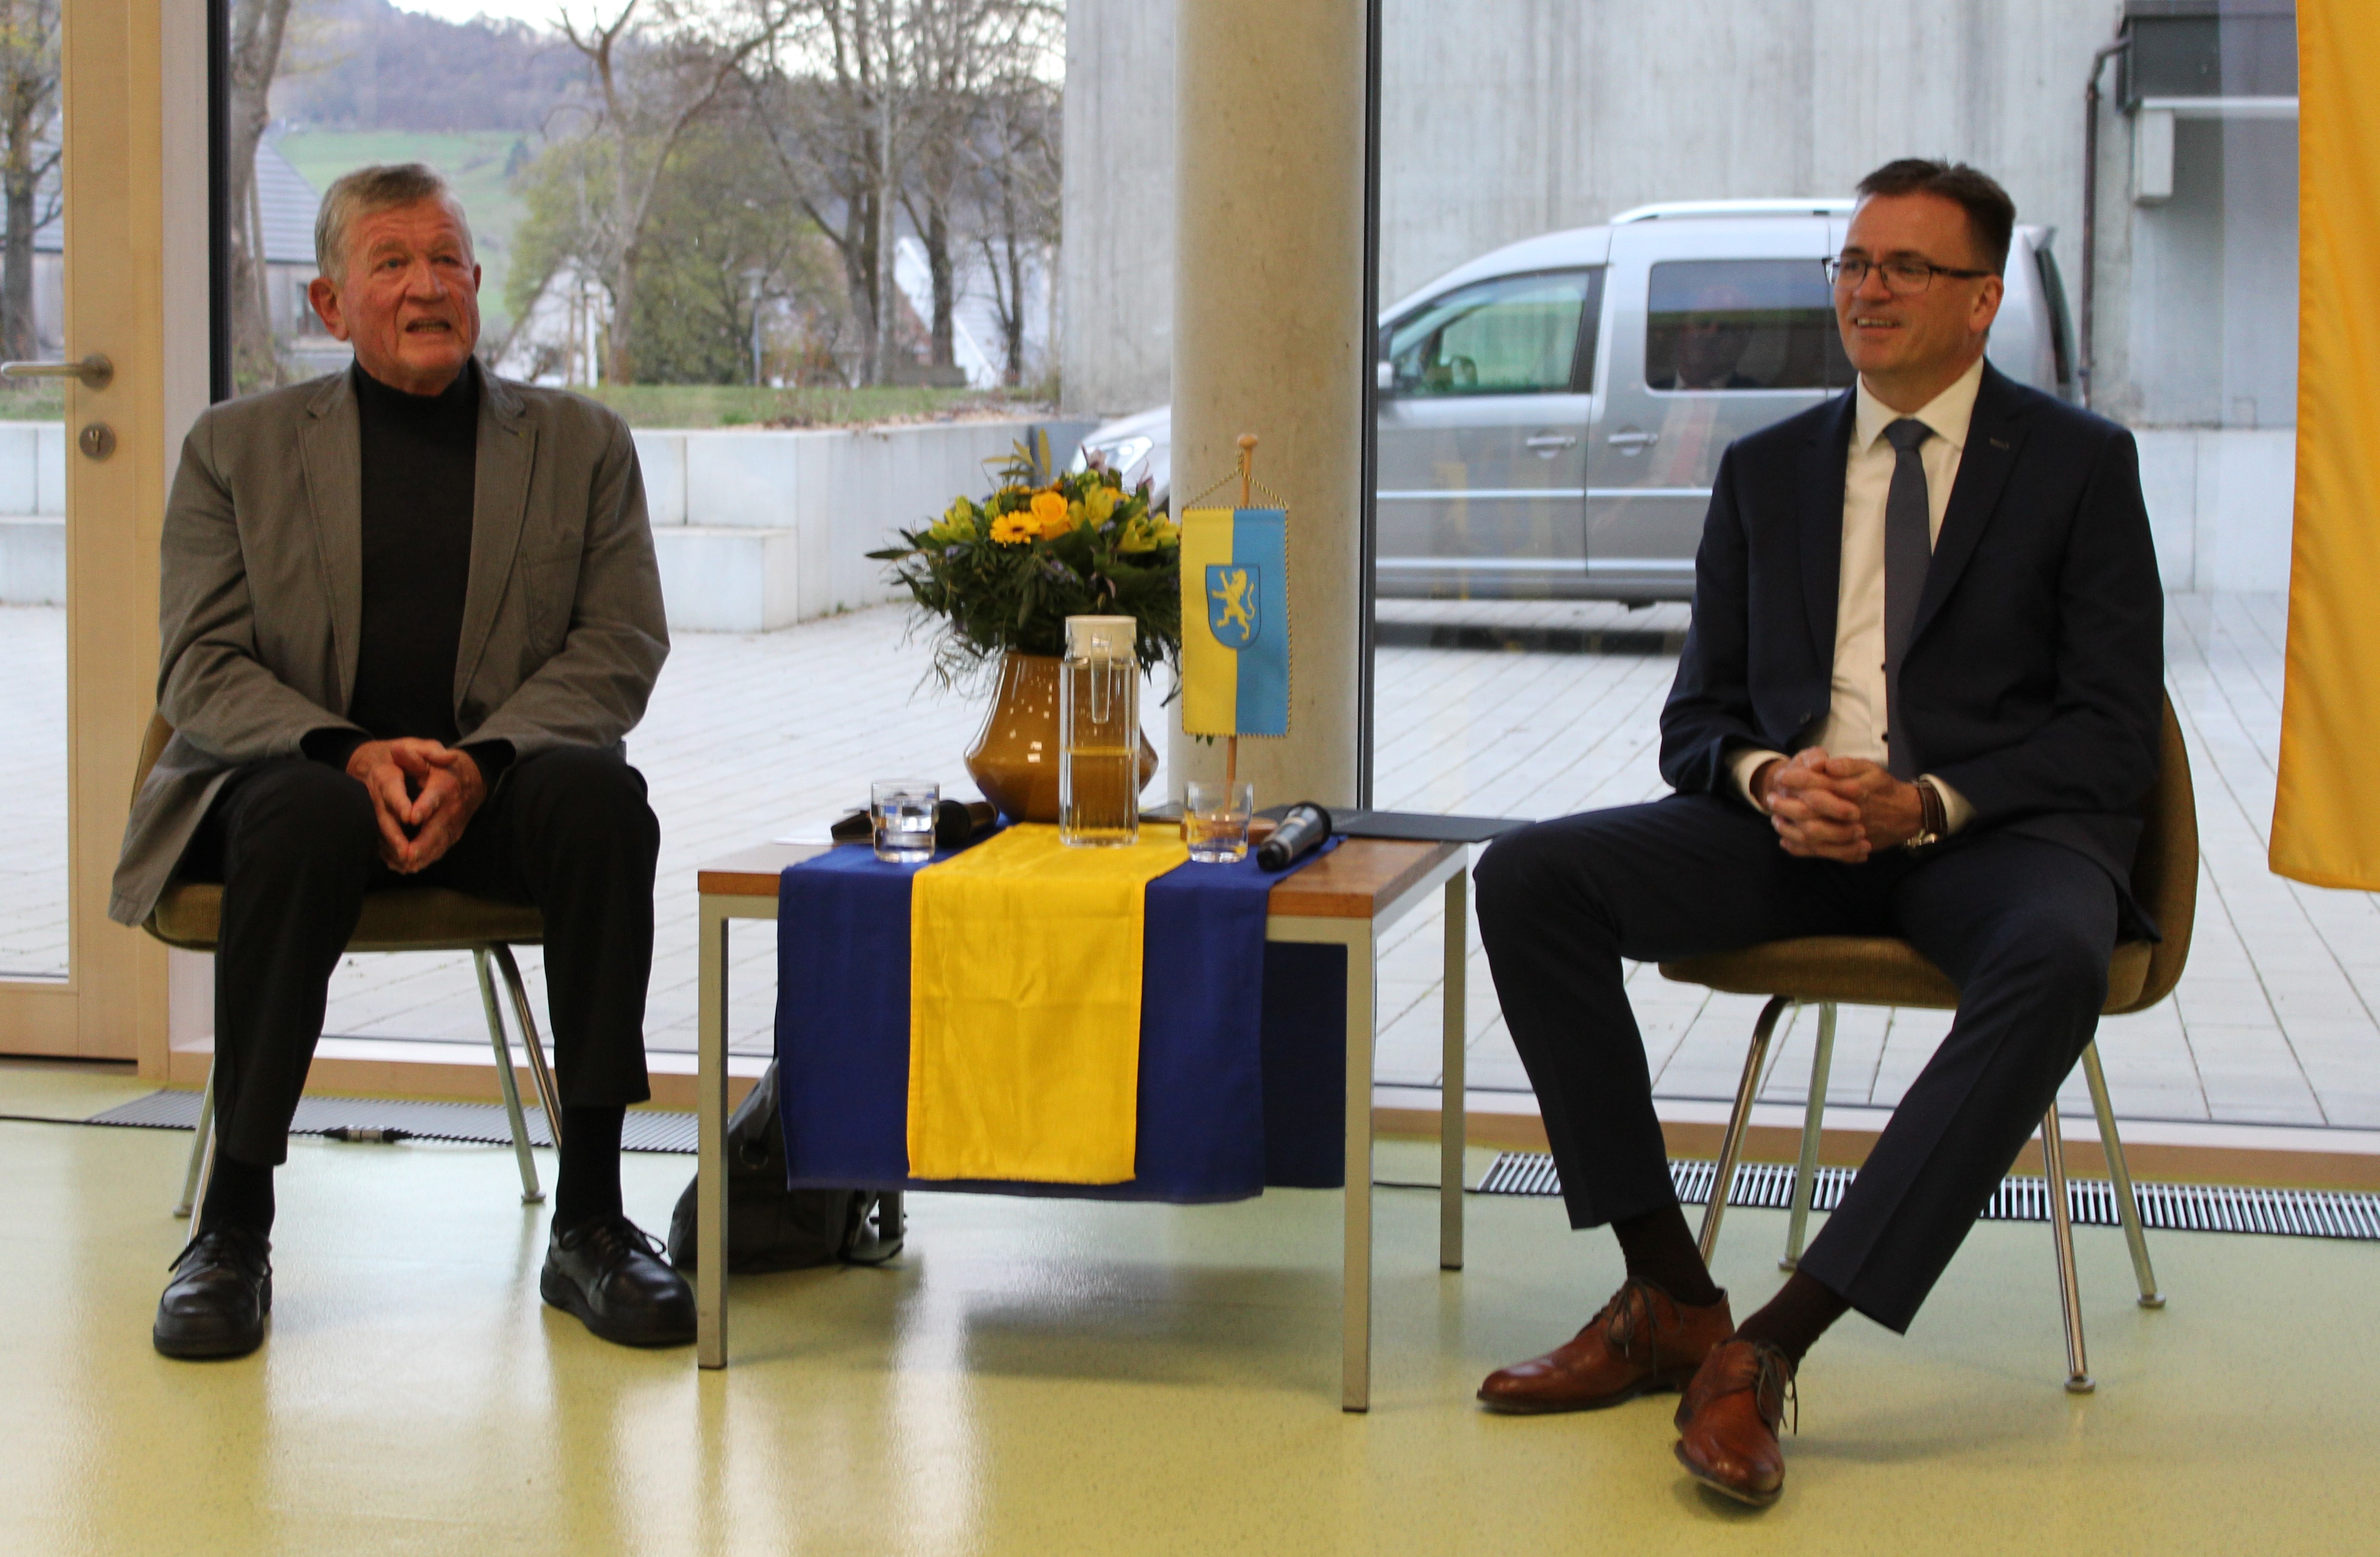  Mit seinen Fragen ermöglichte Franz Merkle (links) den Zuhörern einen Blick hinter das öffentliche Leben des Landrats Dr. Joachim Bläse. 